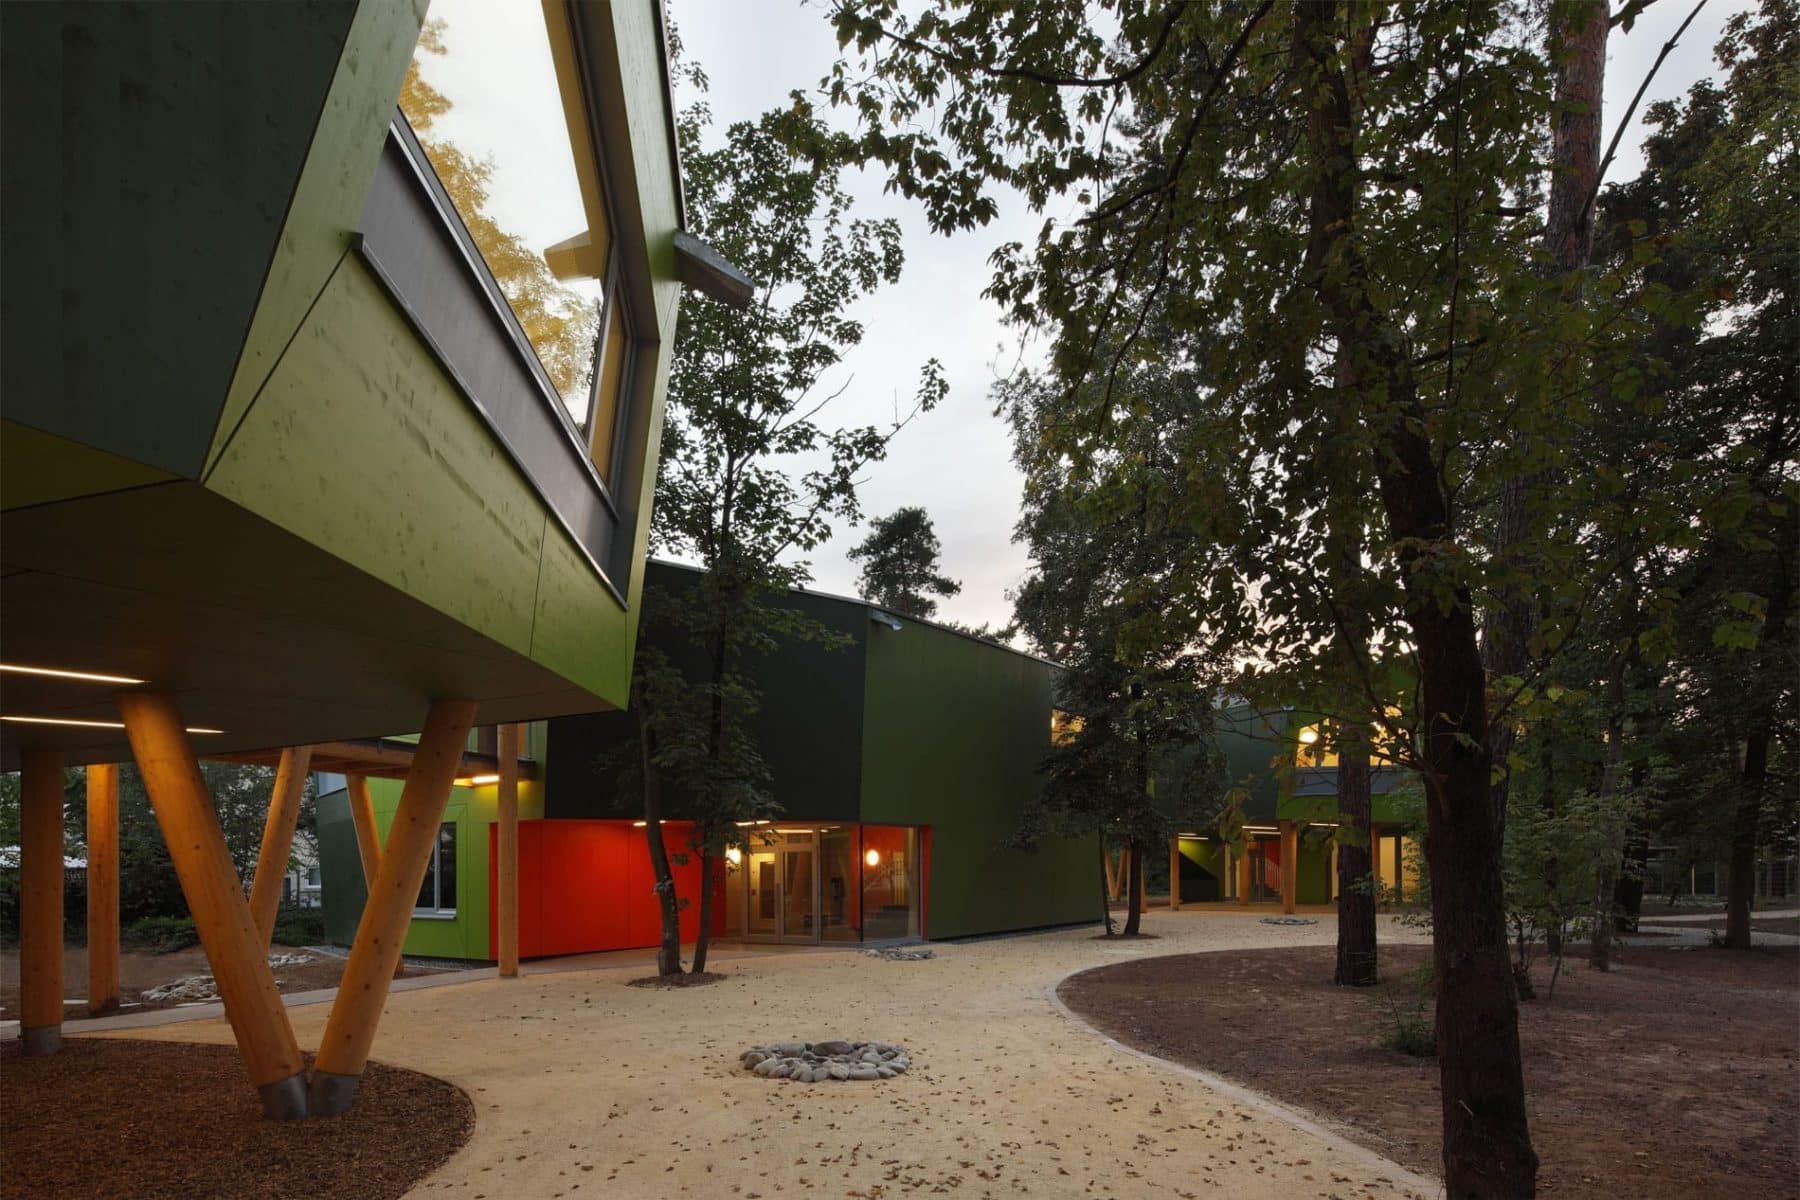 Schule am Kiefernwäldchen / Bildquelle: ramona buxbaum architekten / Fotograf Thomas Eicken